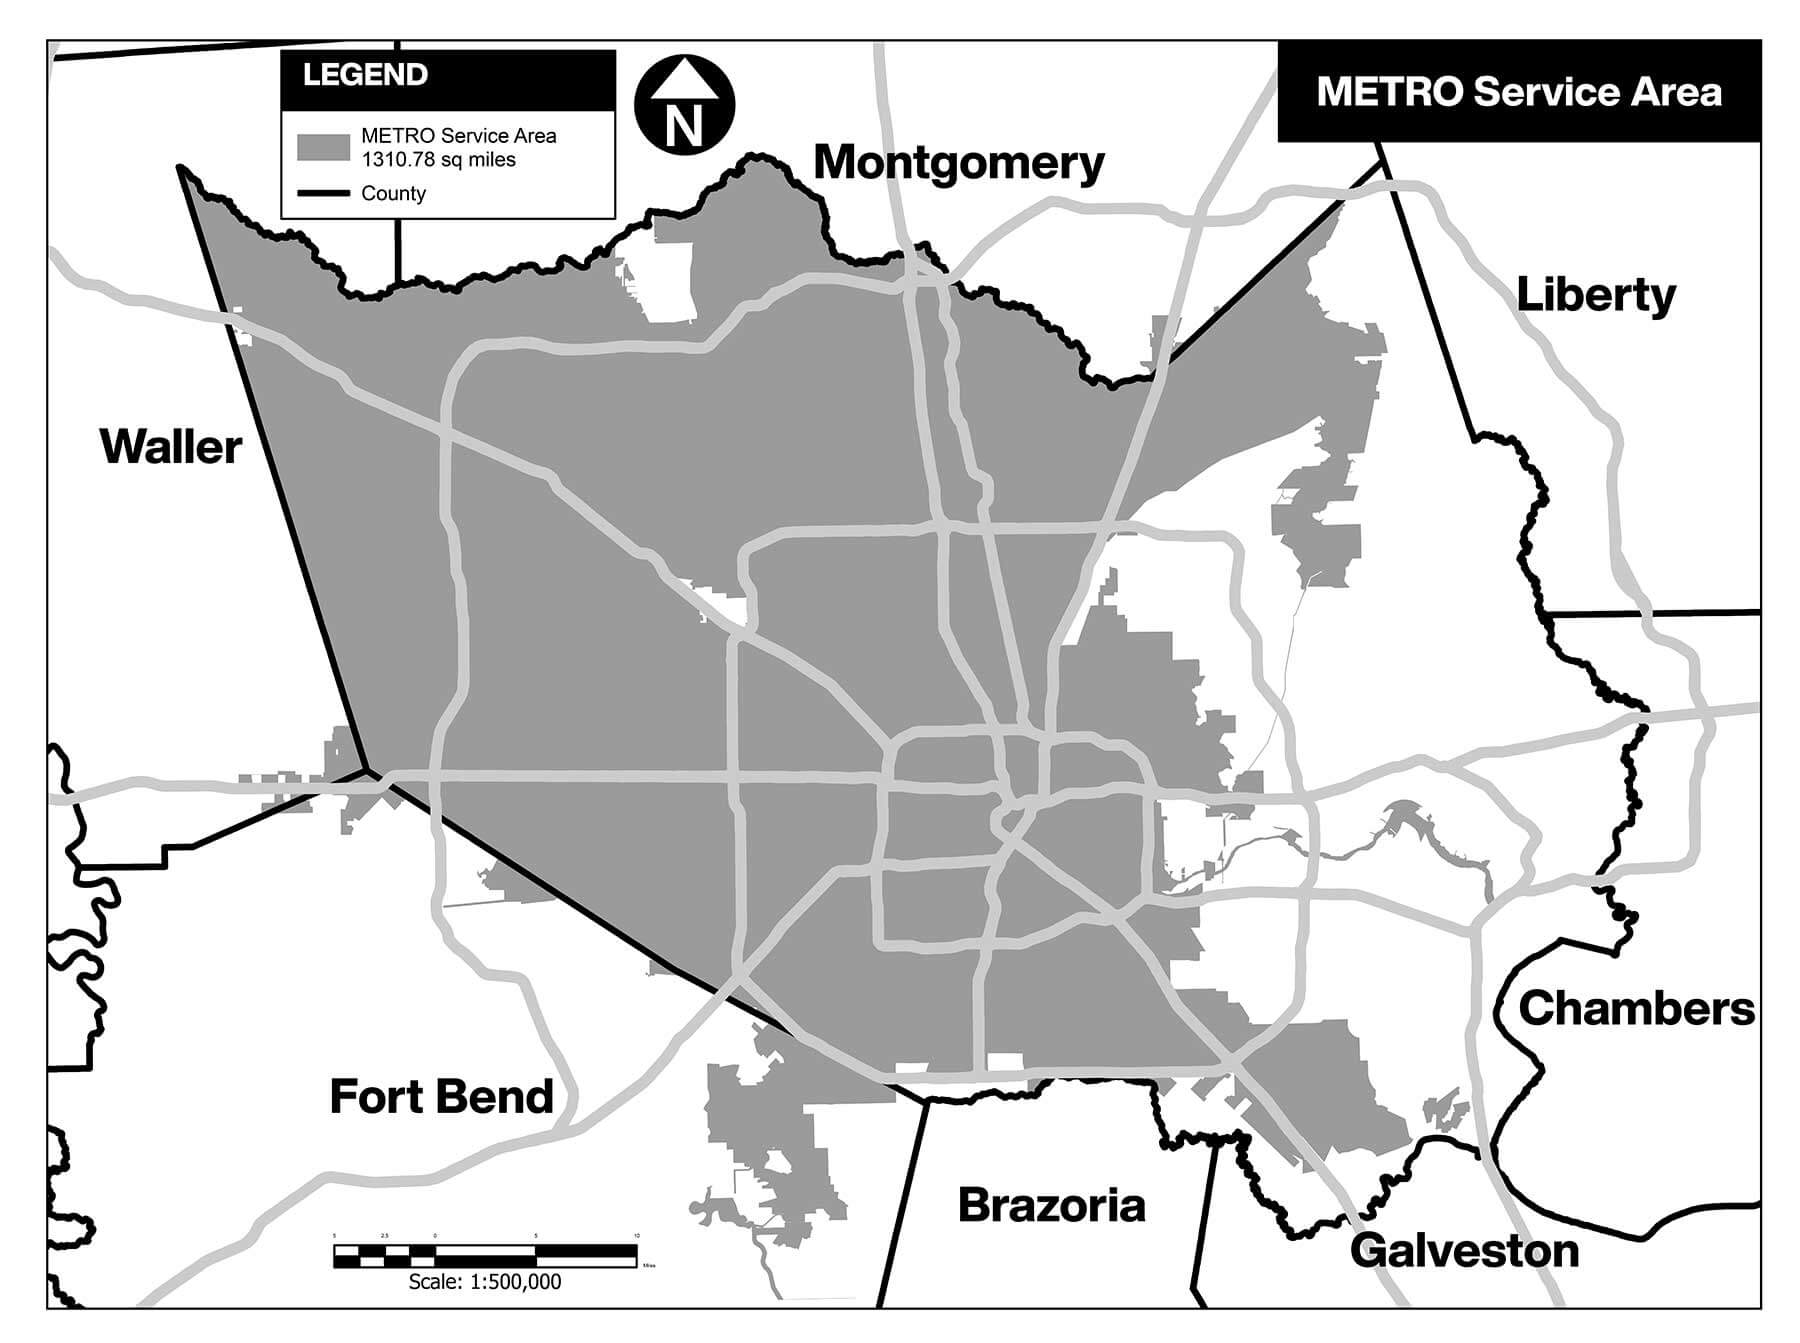 METRO Service Area Map